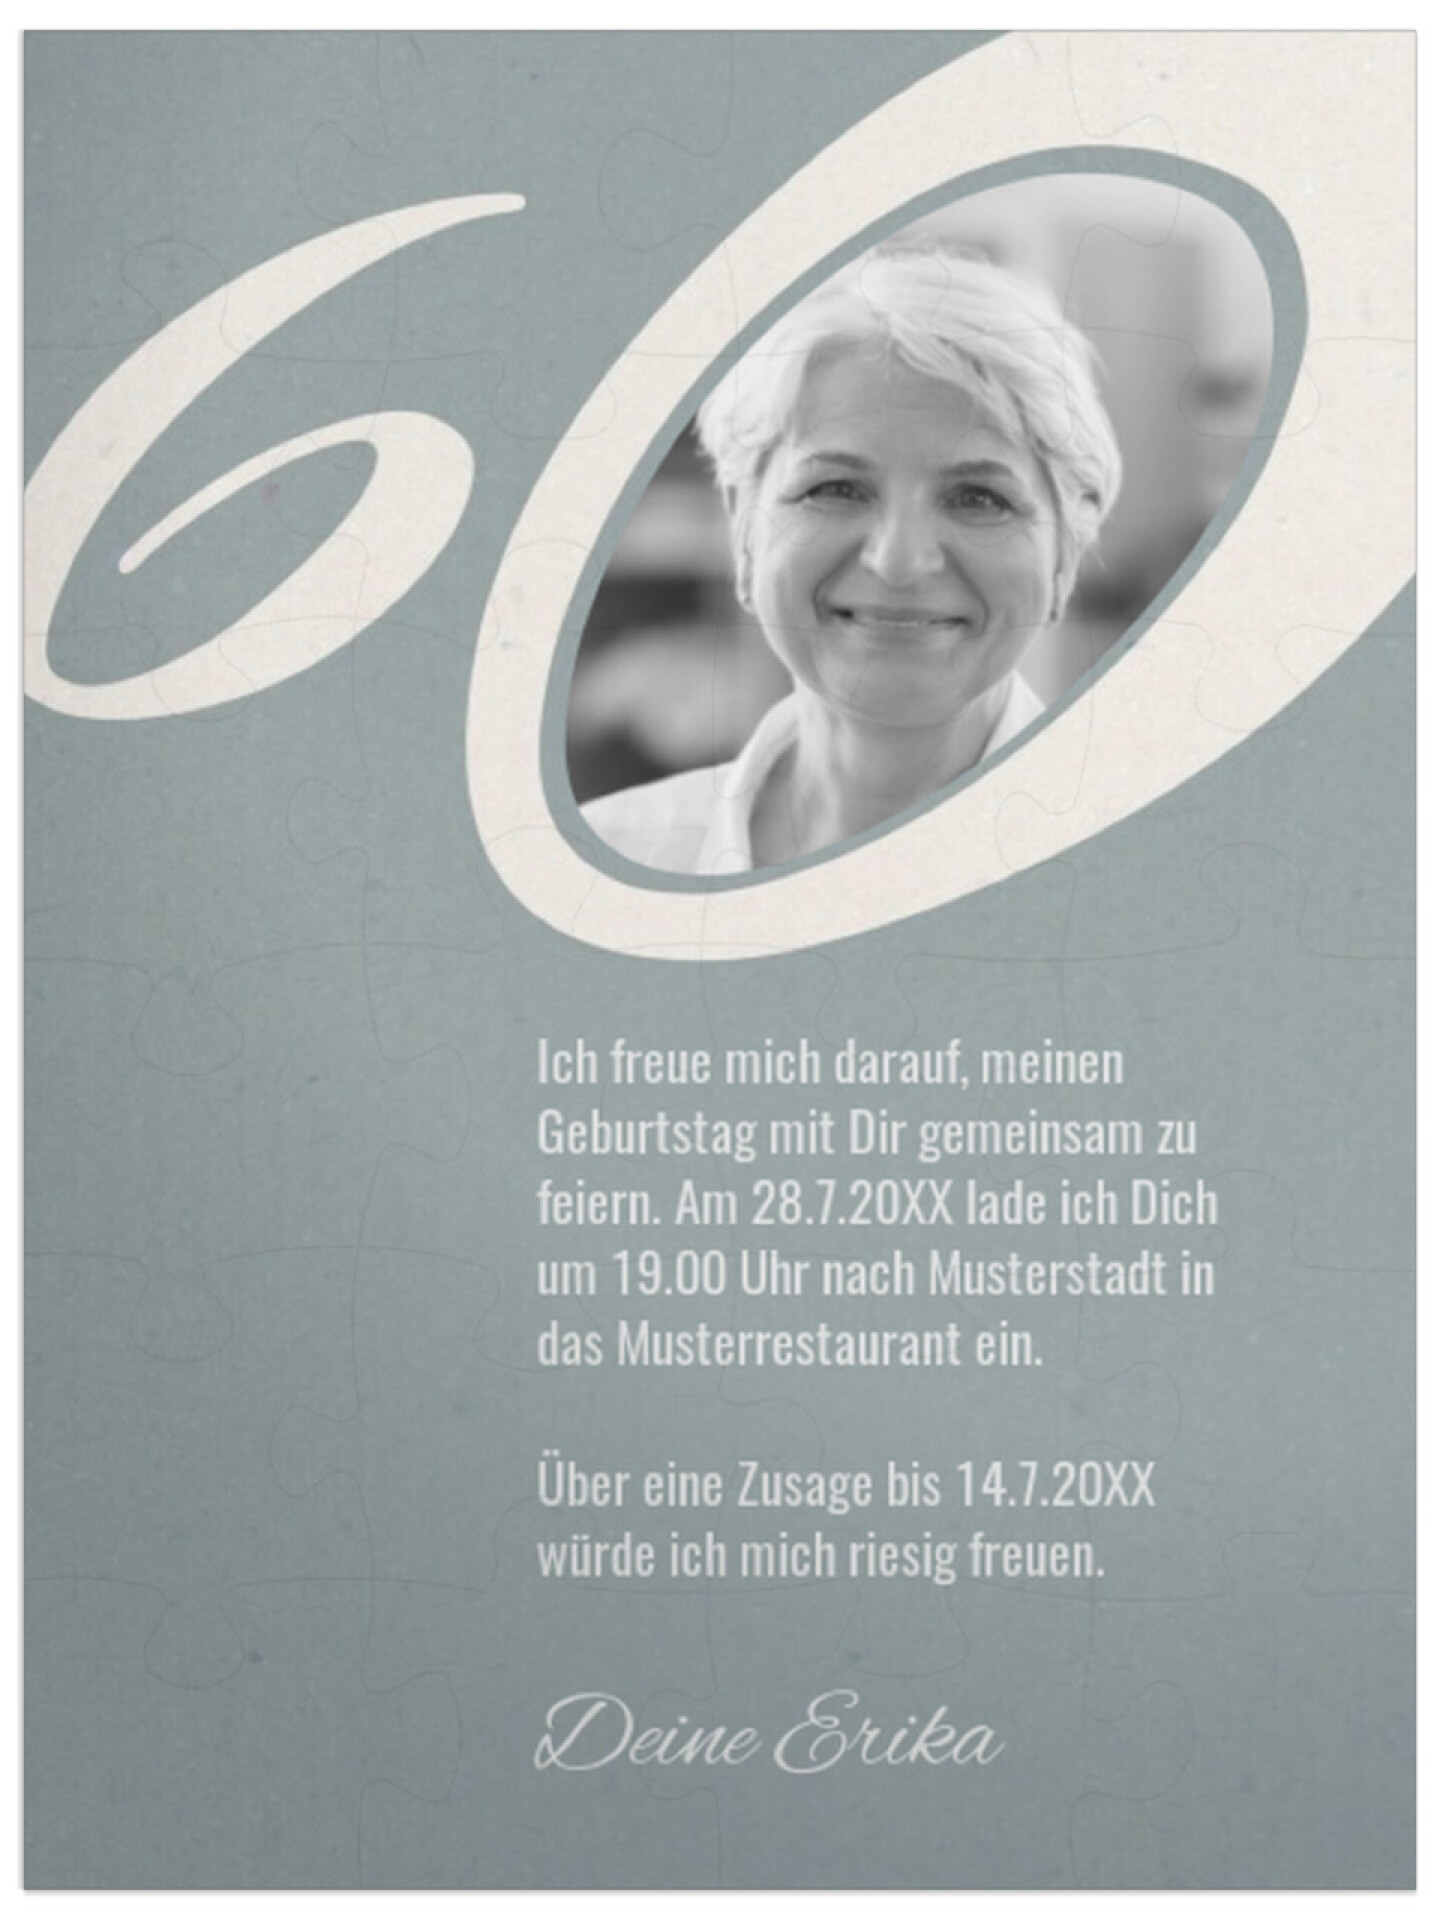 "Meine 60" in Hochformat taubenblau